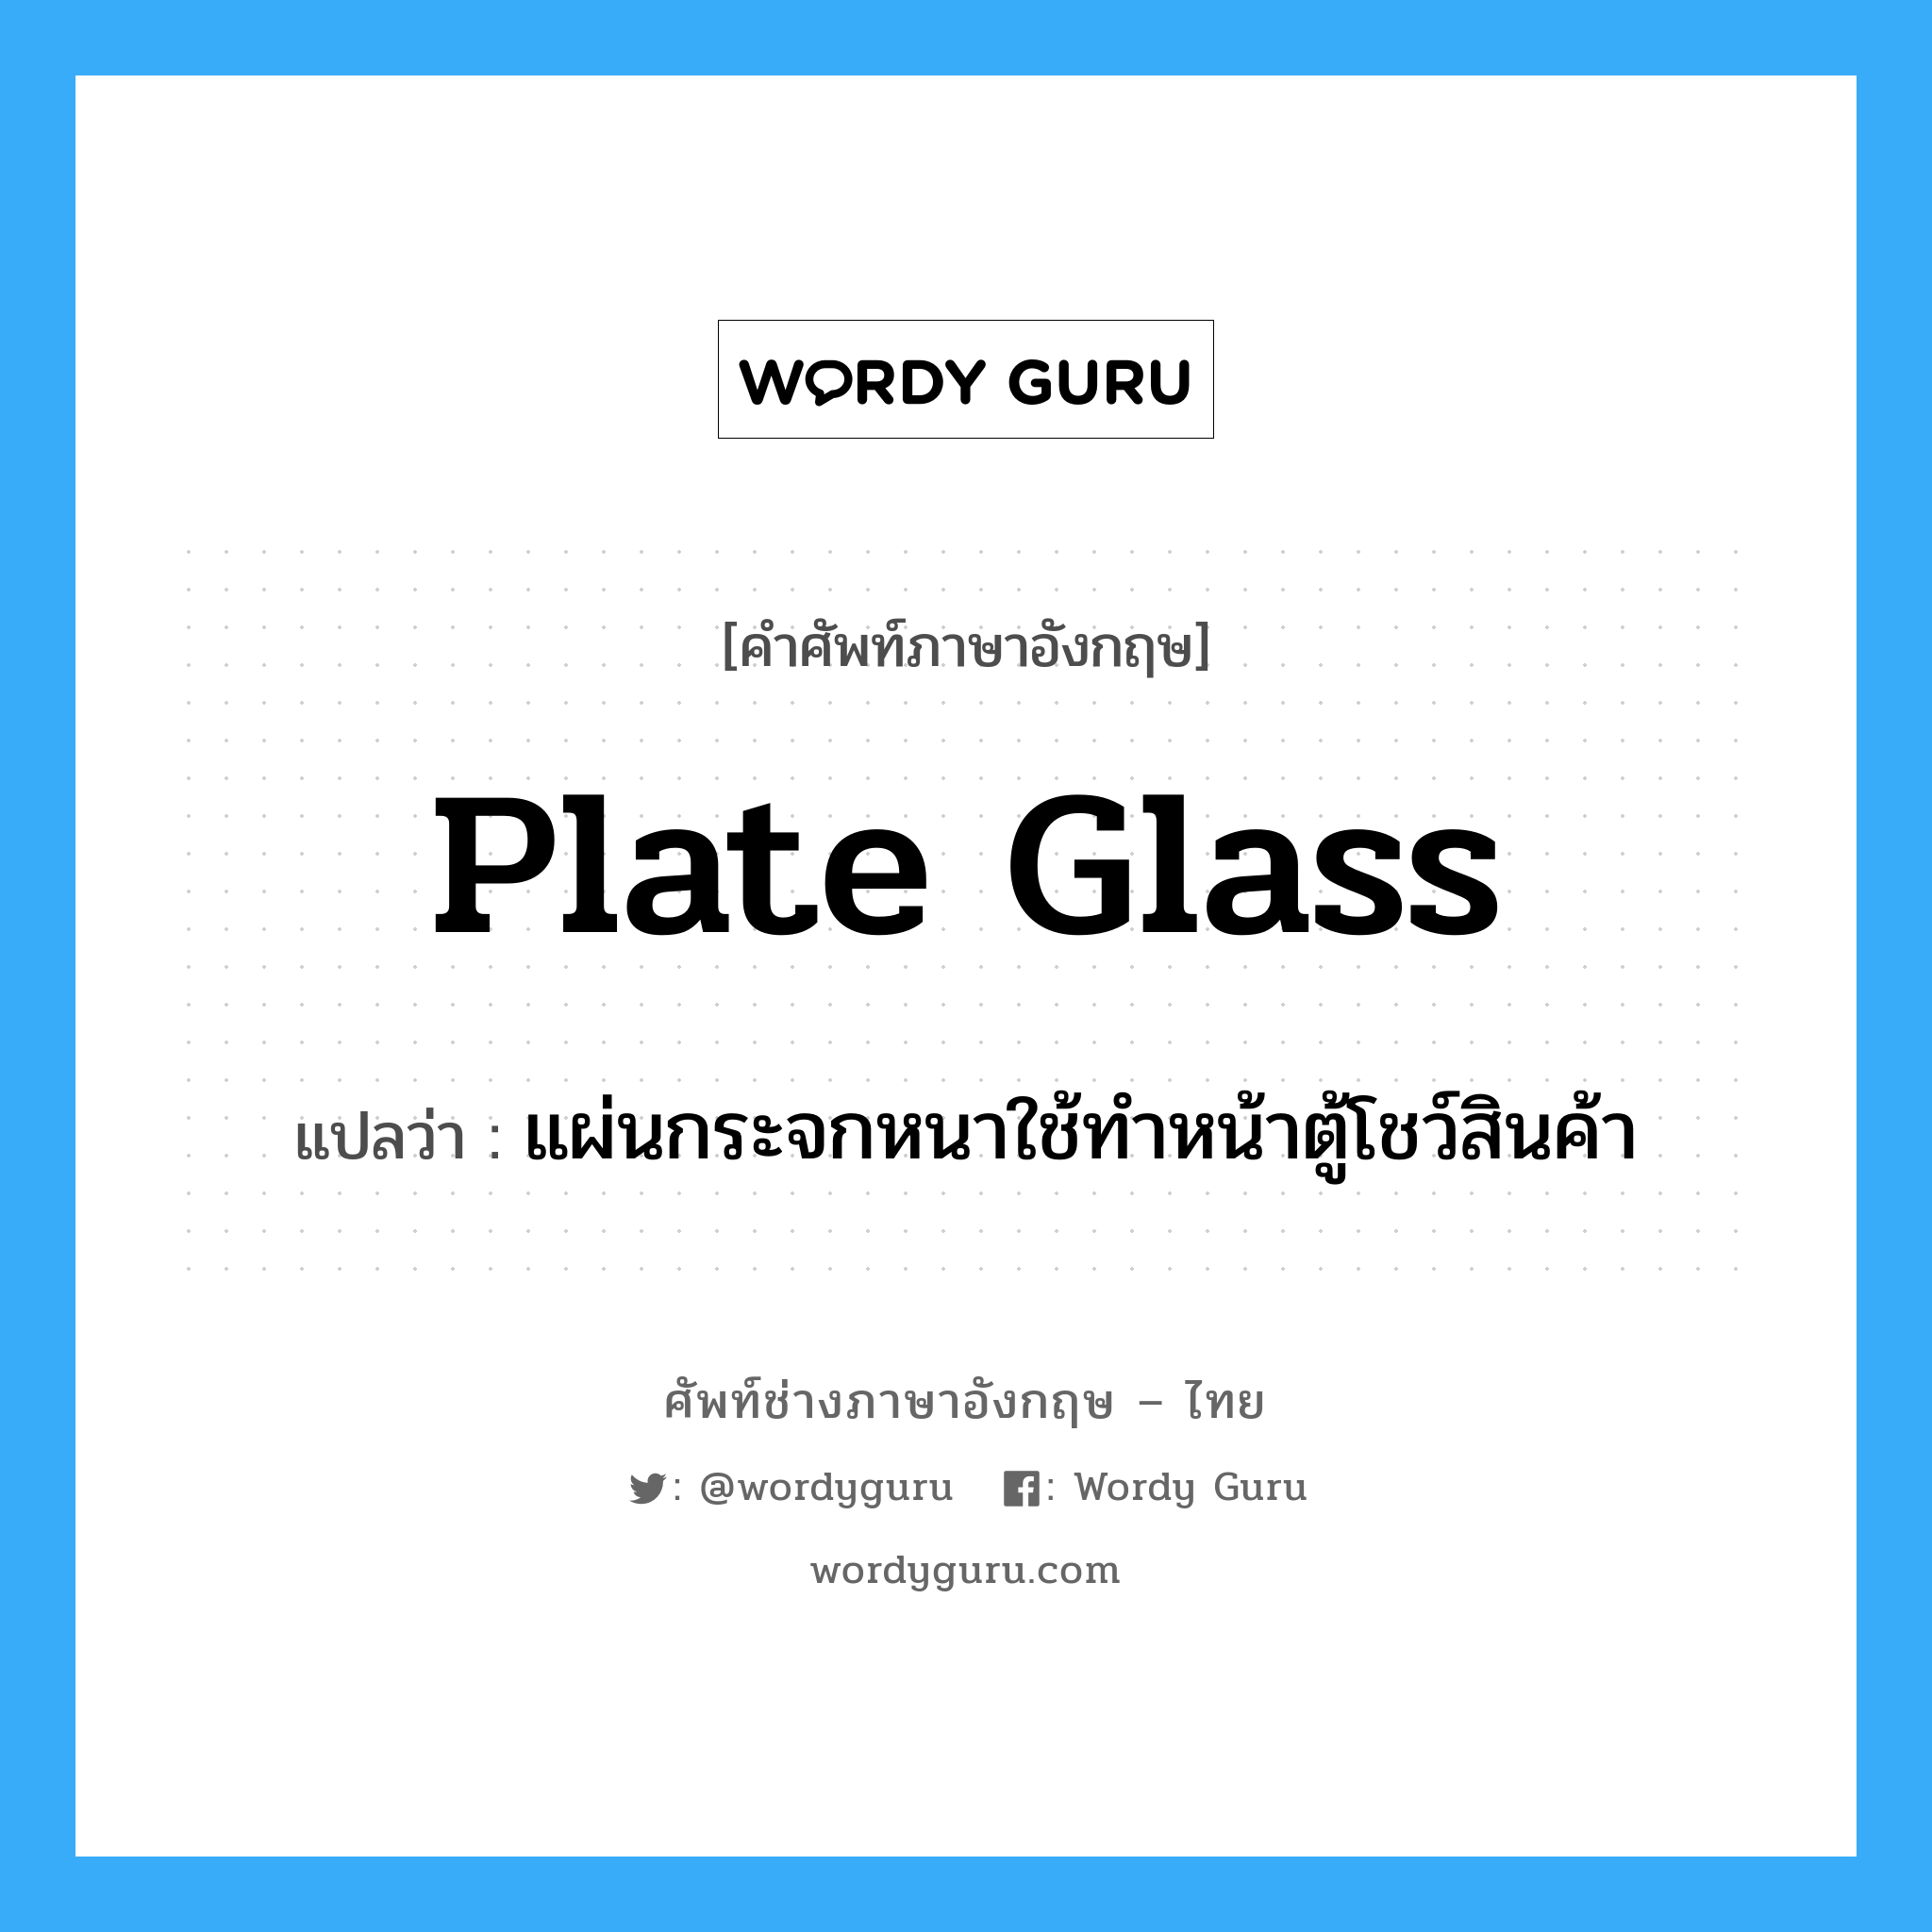 plate-glass แปลว่า?, คำศัพท์ช่างภาษาอังกฤษ - ไทย plate glass คำศัพท์ภาษาอังกฤษ plate glass แปลว่า แผ่นกระจกหนาใช้ทำหน้าตู้โชว์สินค้า